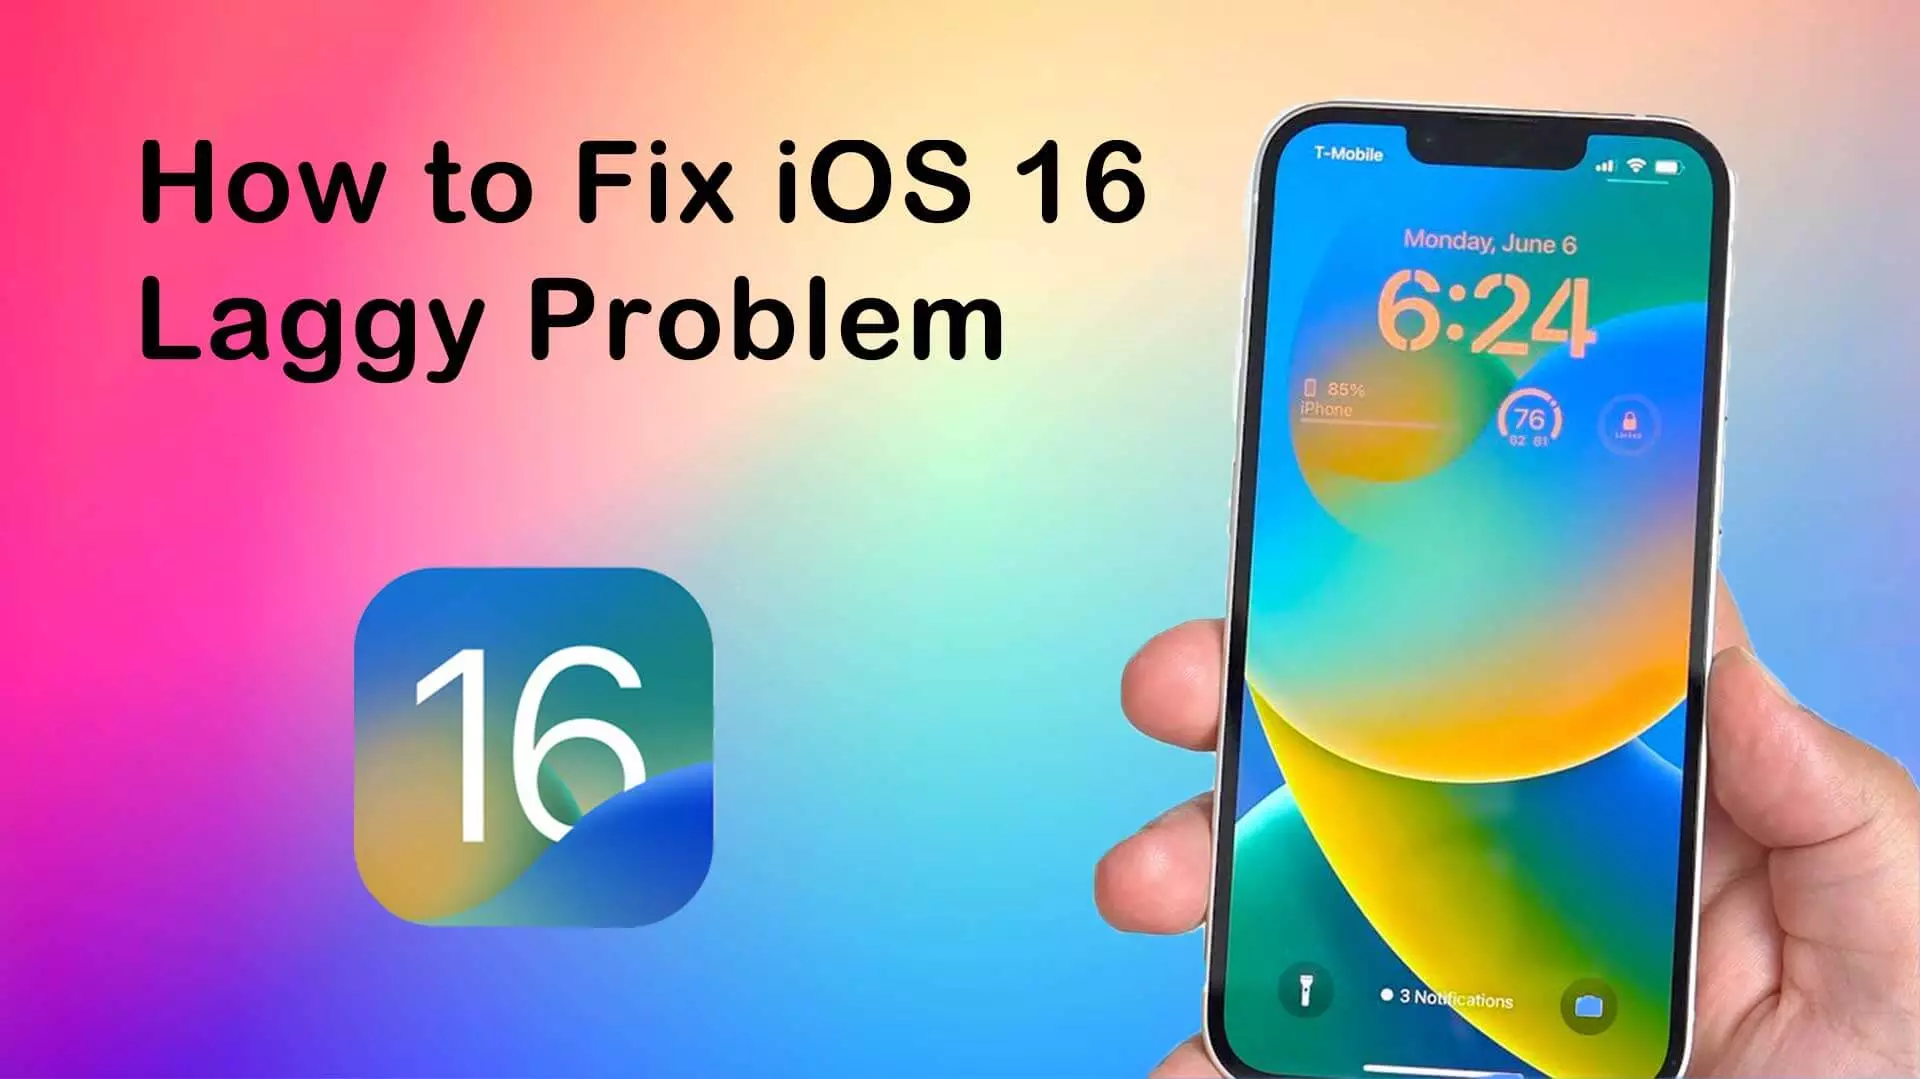 Why is the iOS 16 so laggy?